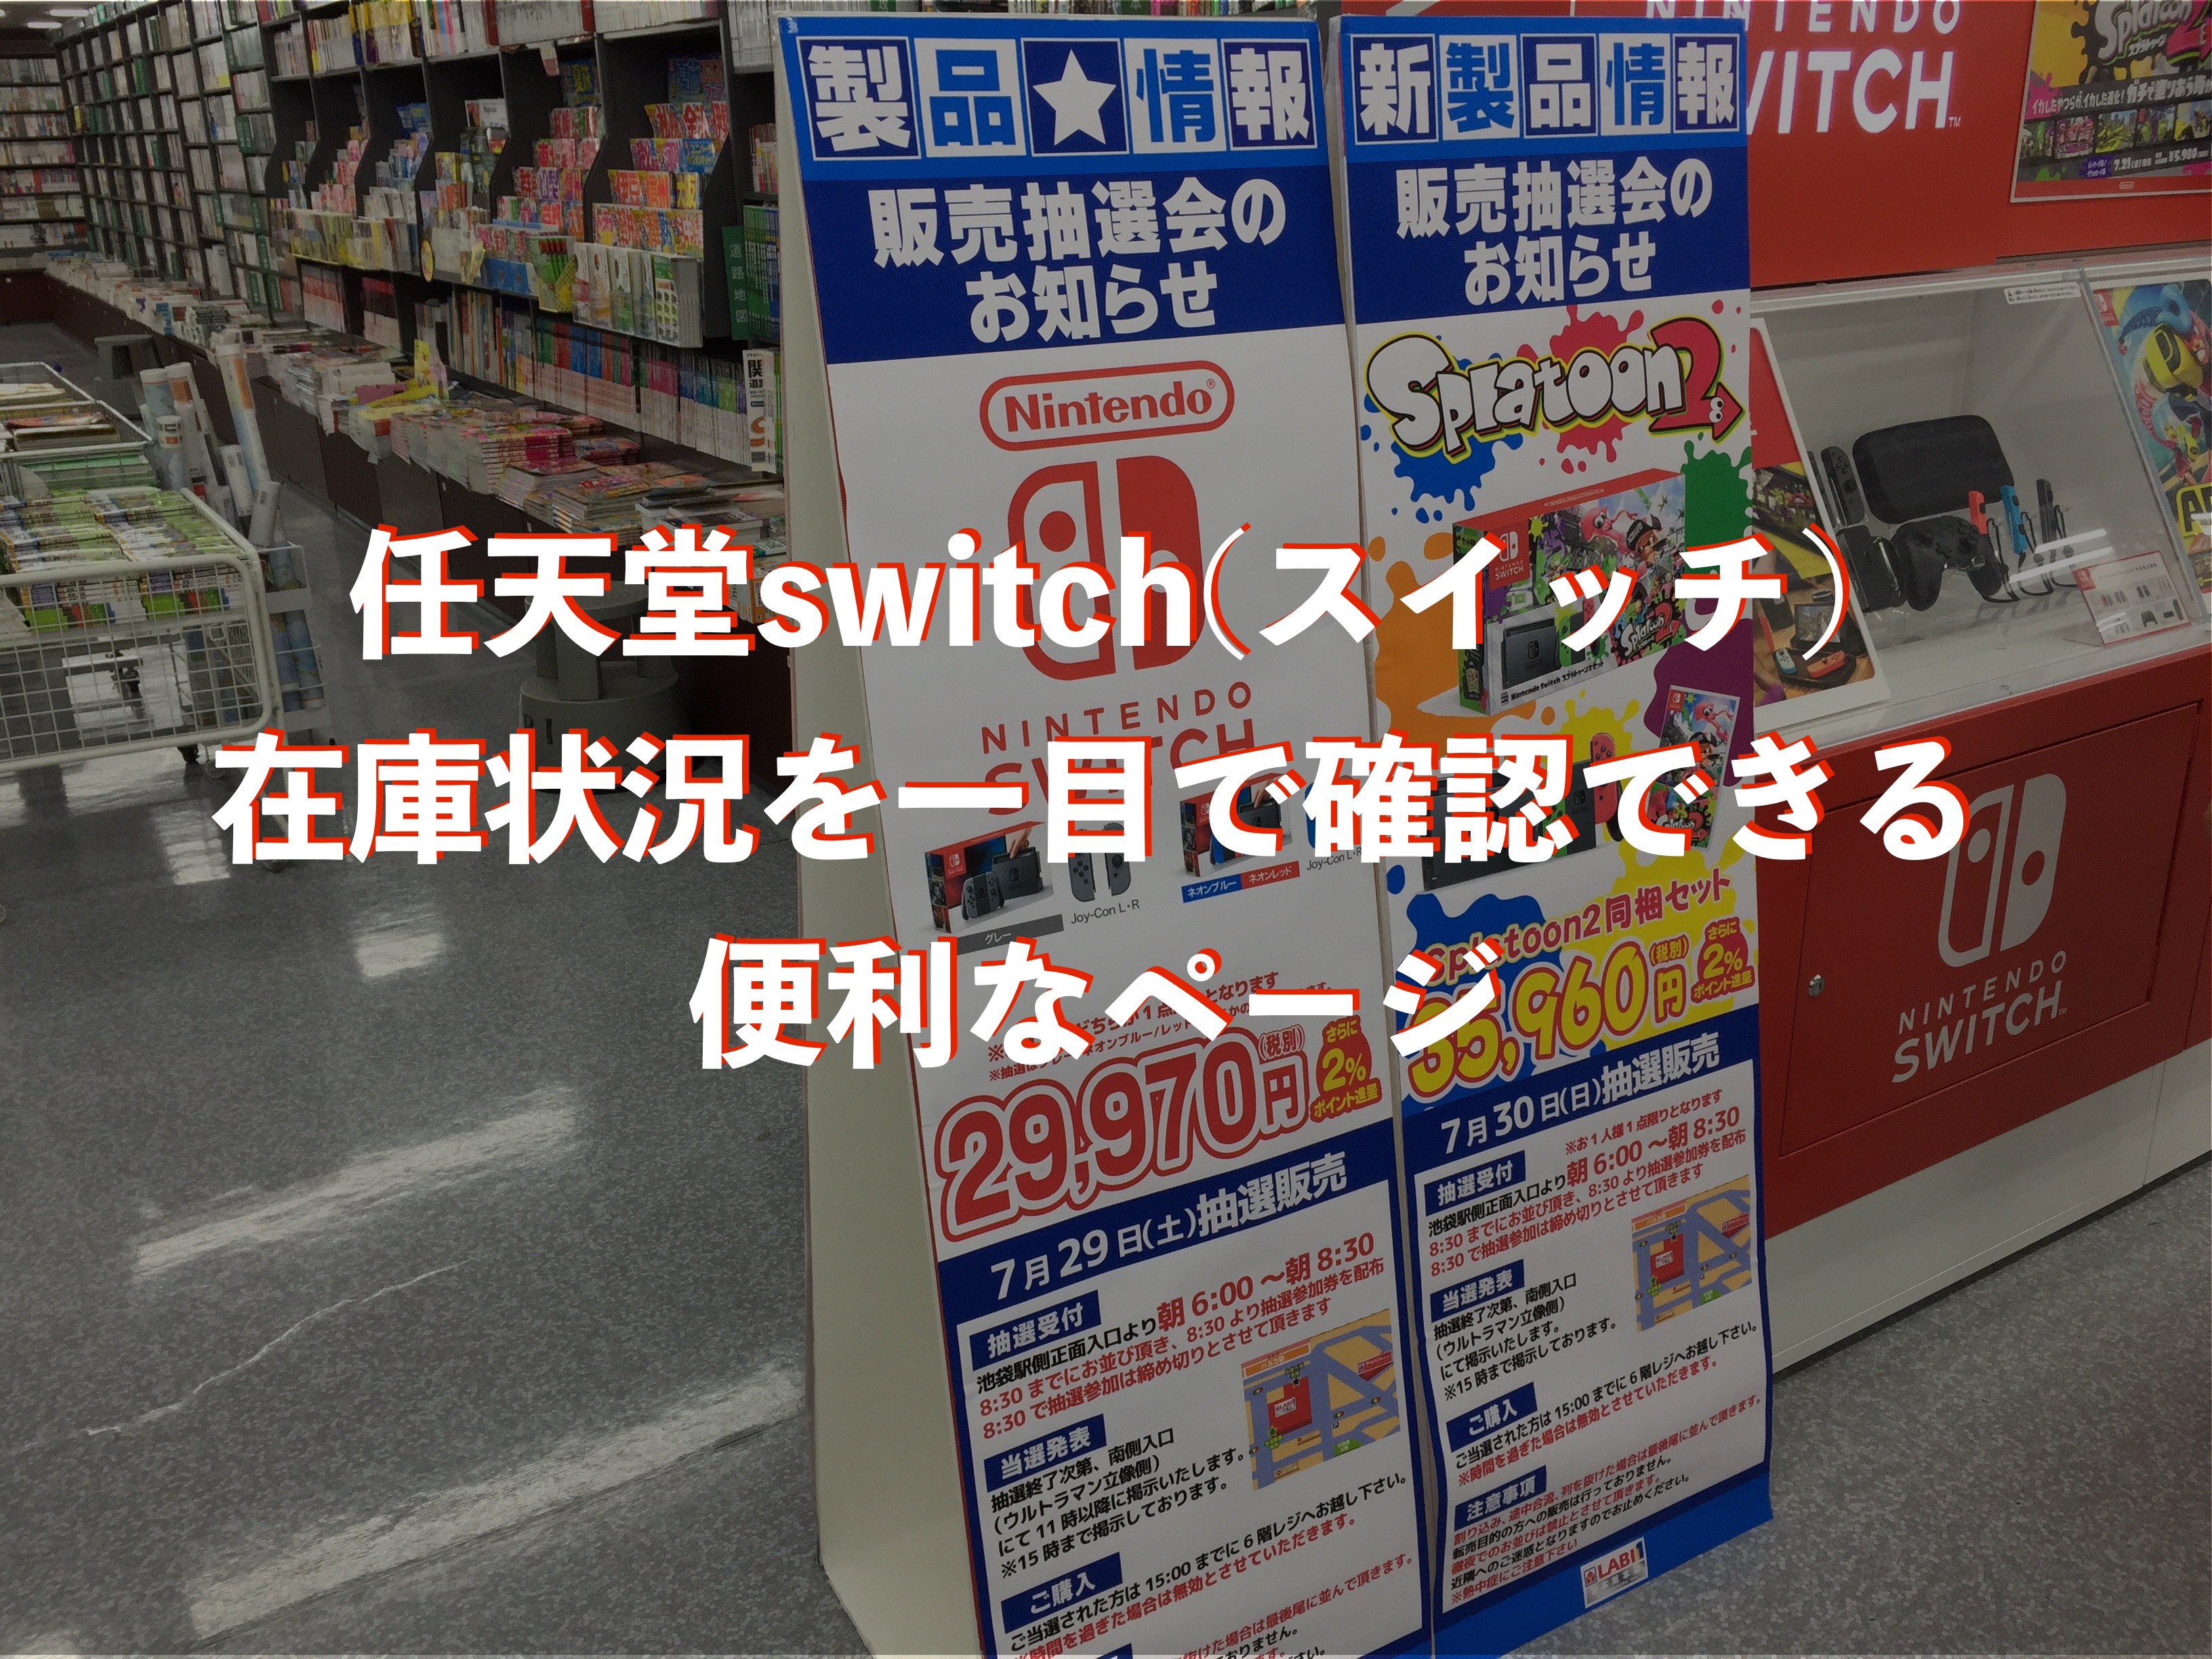 ヤマダ 電機 Switch 抽選 プログラム ニュース